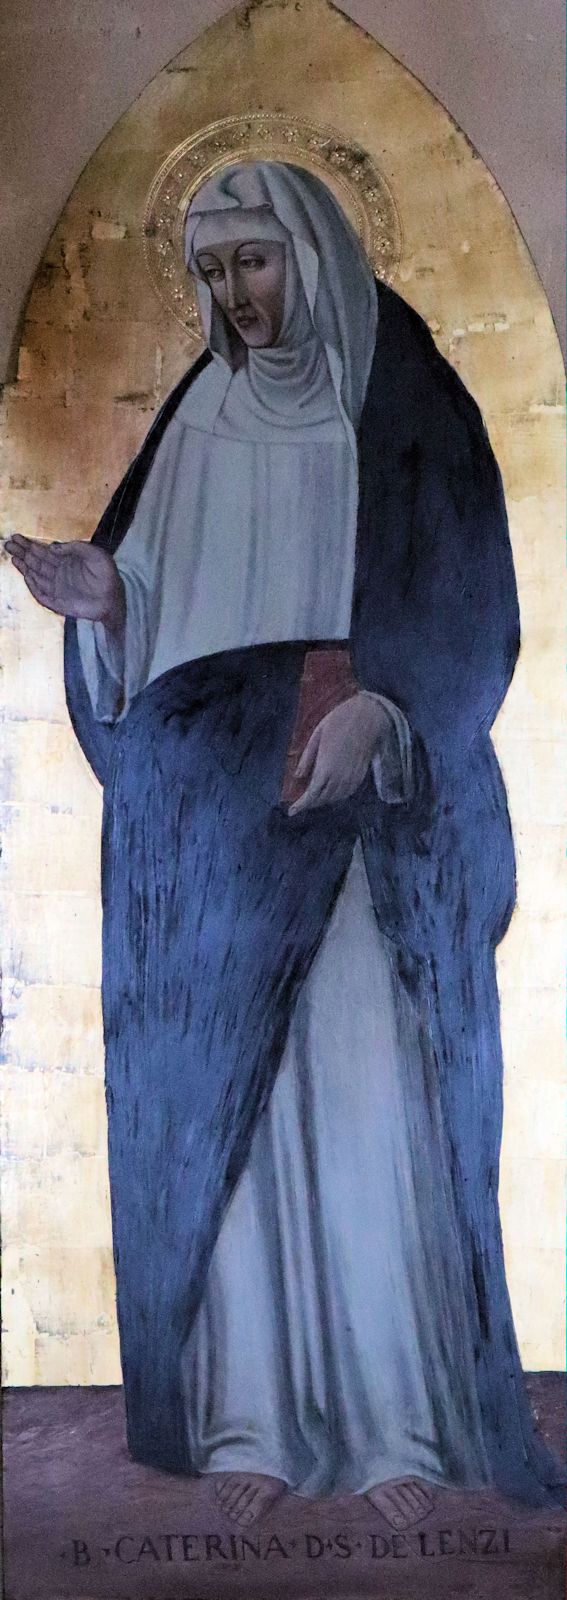 Ikone in der Basilika San Domenico in Siena